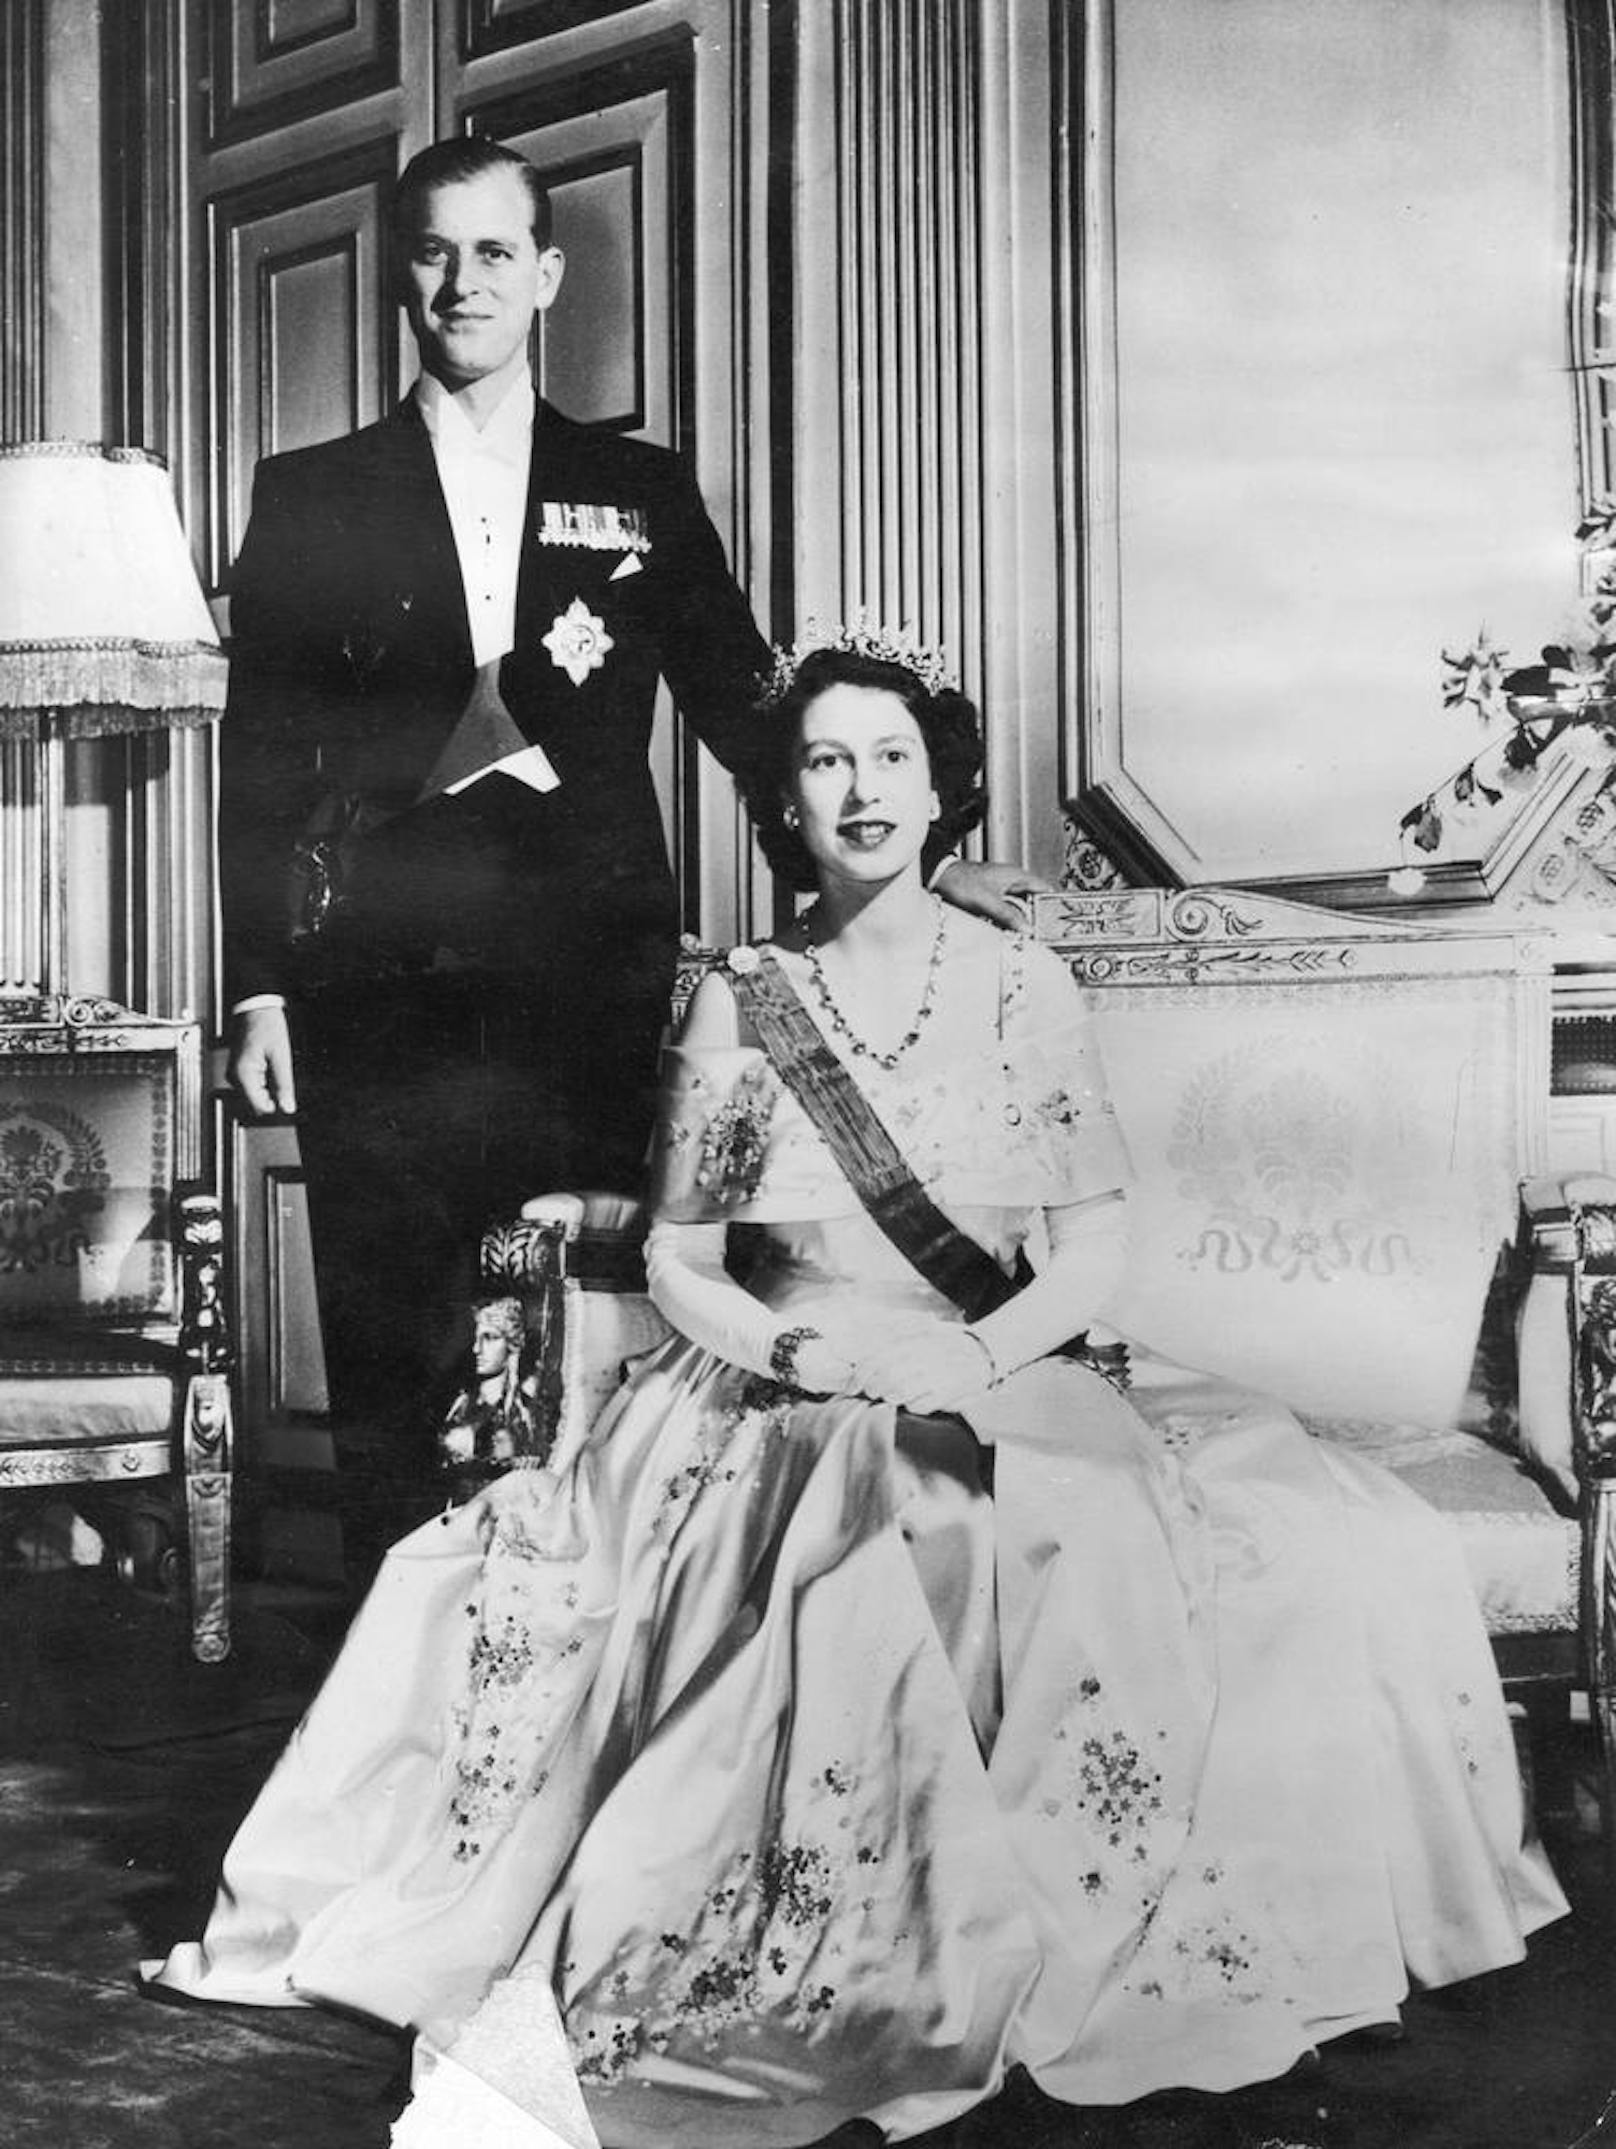 Immer höflich: Bei einem Staatsbesuch in Belize sagte sie auch zu einem Eintopf mit Rattenfleisch nicht nein.

Foto: 
15.05.1948  - Prinzessin Elizabeth und ihr Mann Prinz Philip im Elysee Palast in Paris.